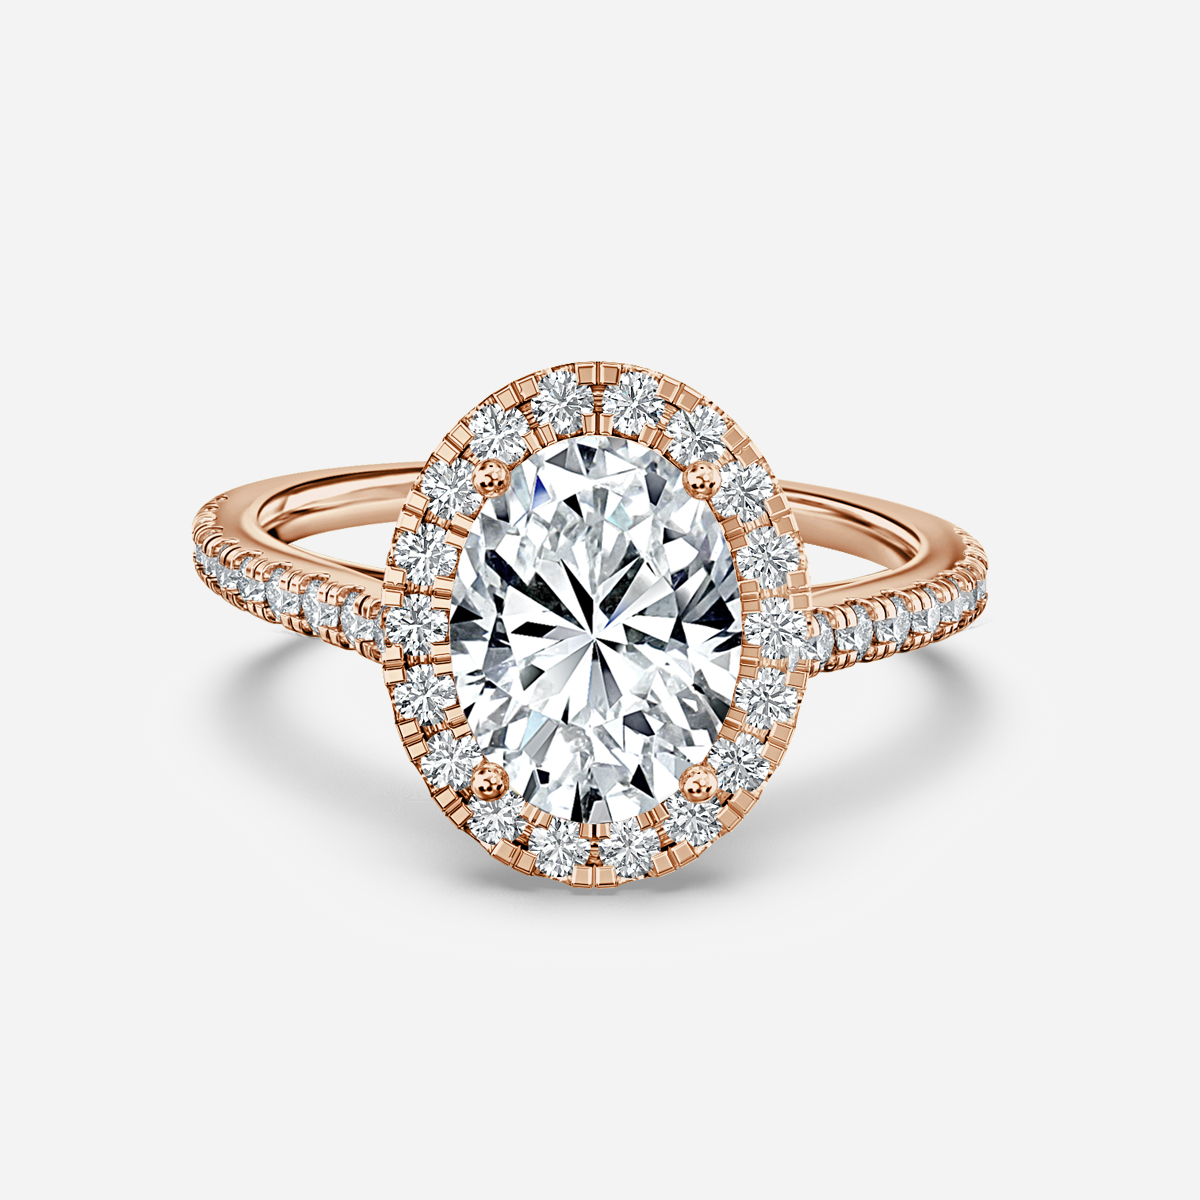 Maya Petite Rose Gold Halo Engagement Ring